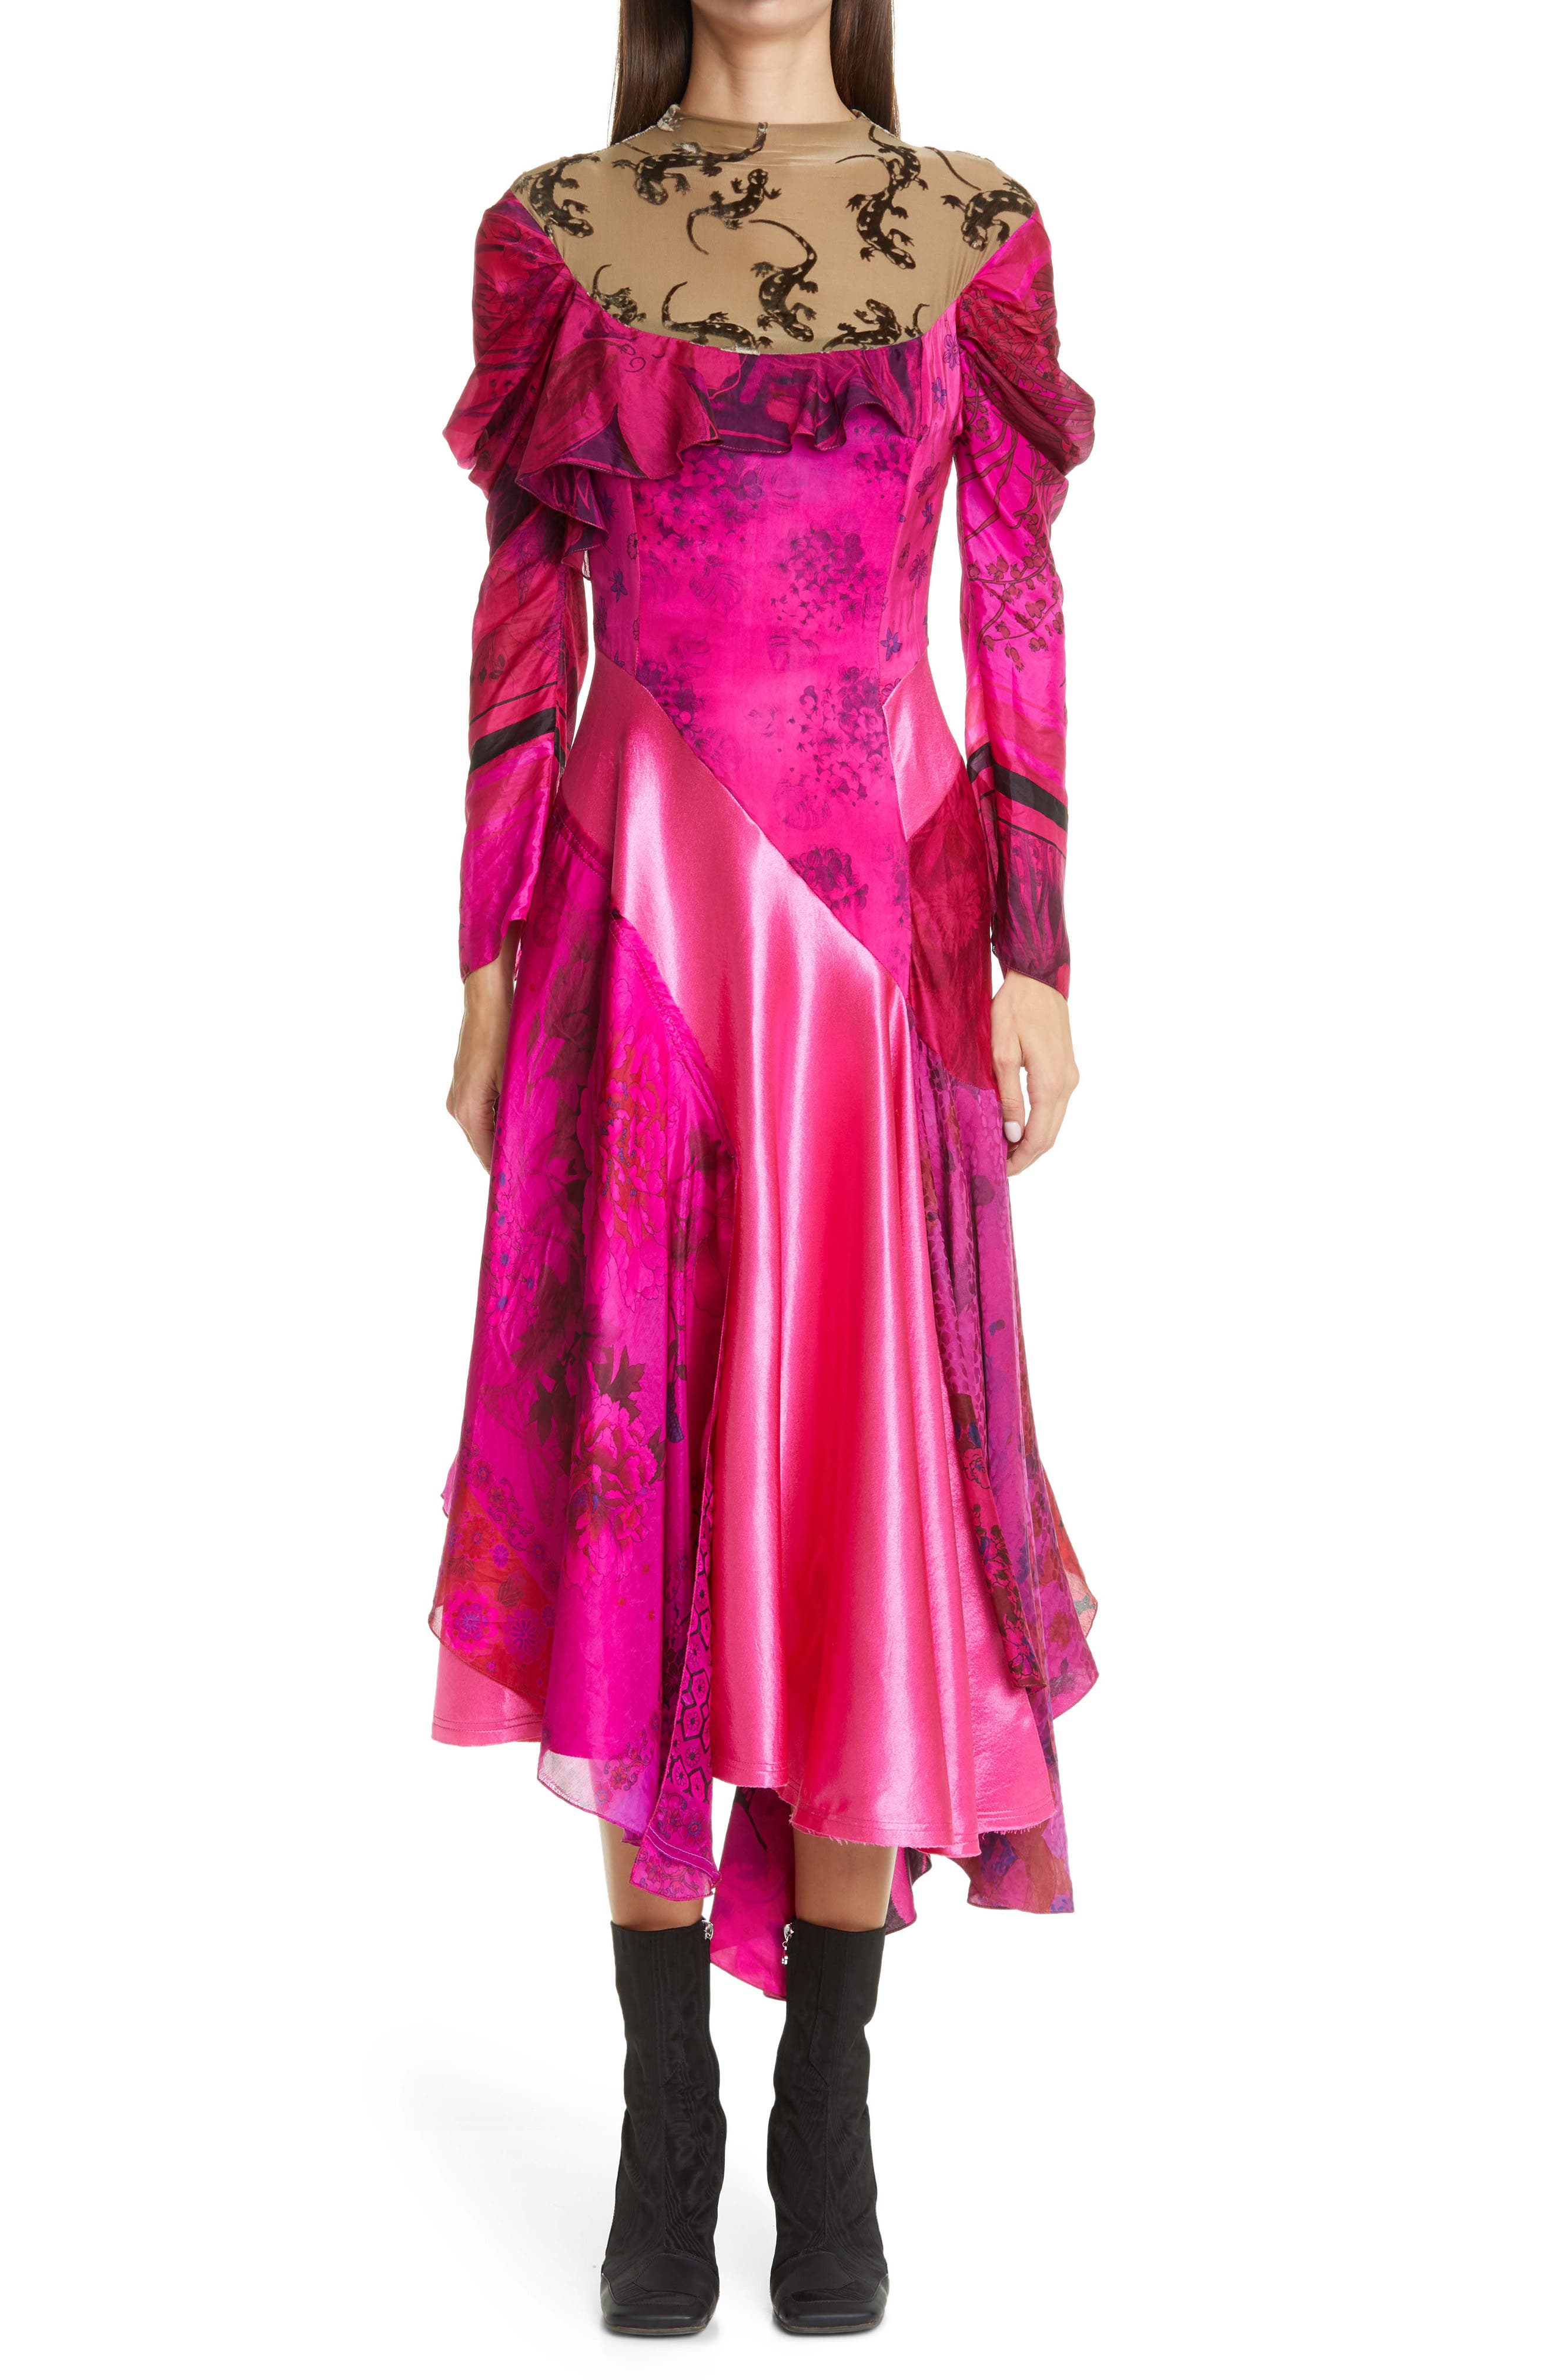 hot pink designer dress